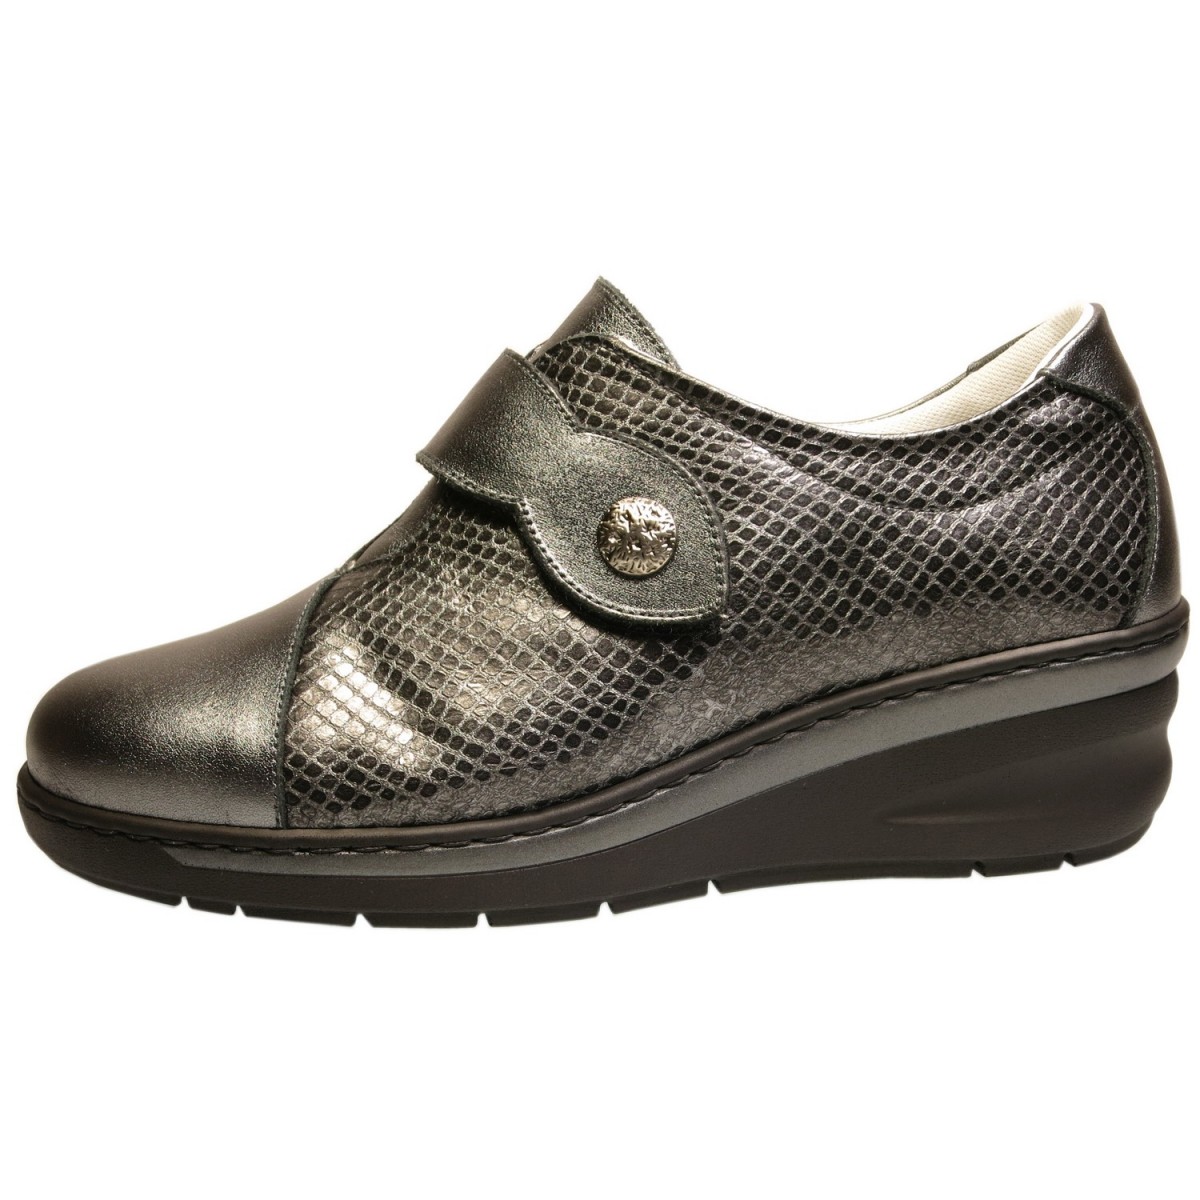 Zapato ancho especial con velcro mujer, gris Notton N2406